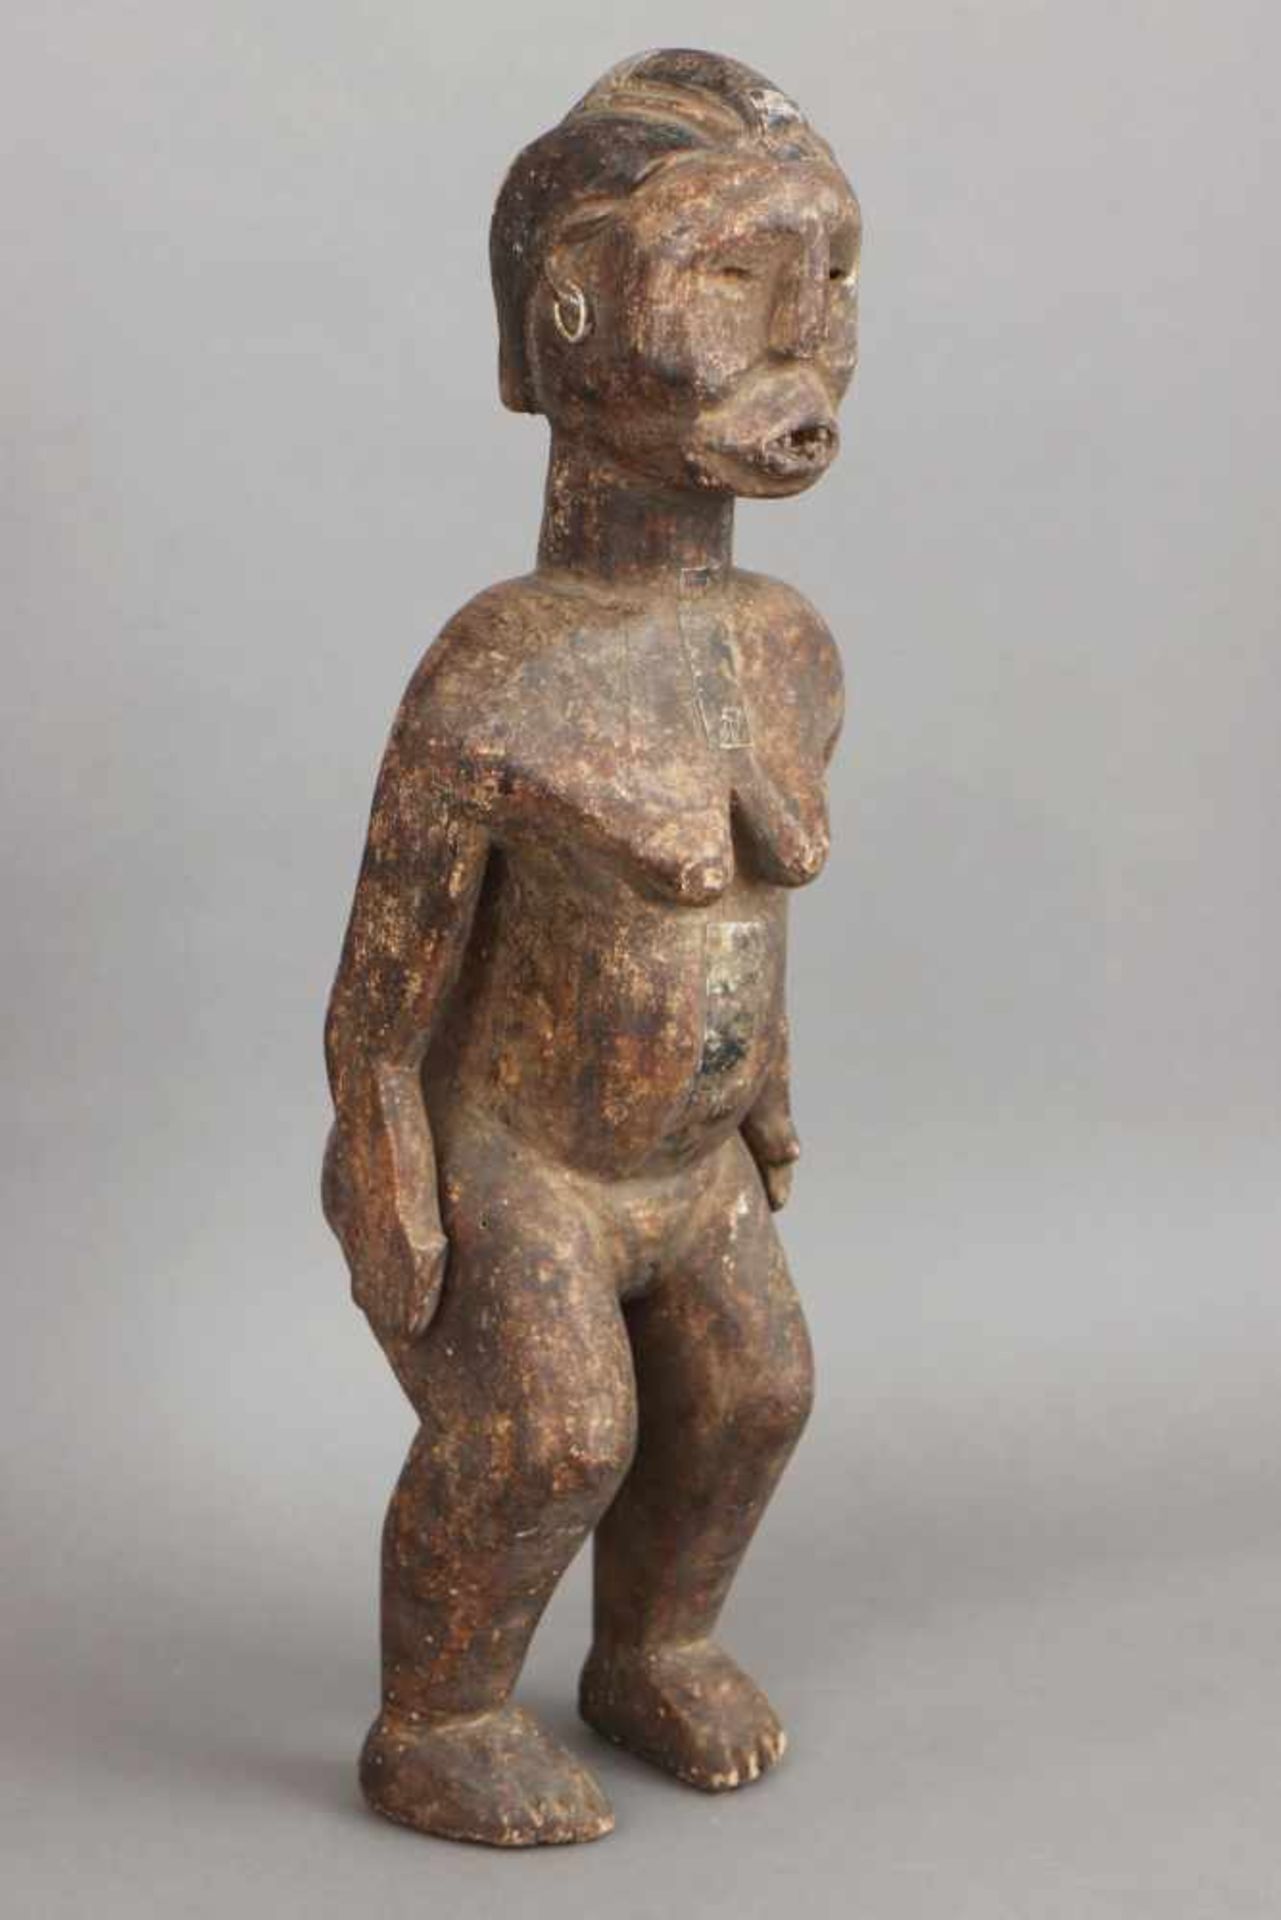 Afrikanische Ritual-/Ahnenfigur Holz, geschnitzt und dunkel patiniert, Metallbeschläge, stehende - Image 2 of 4